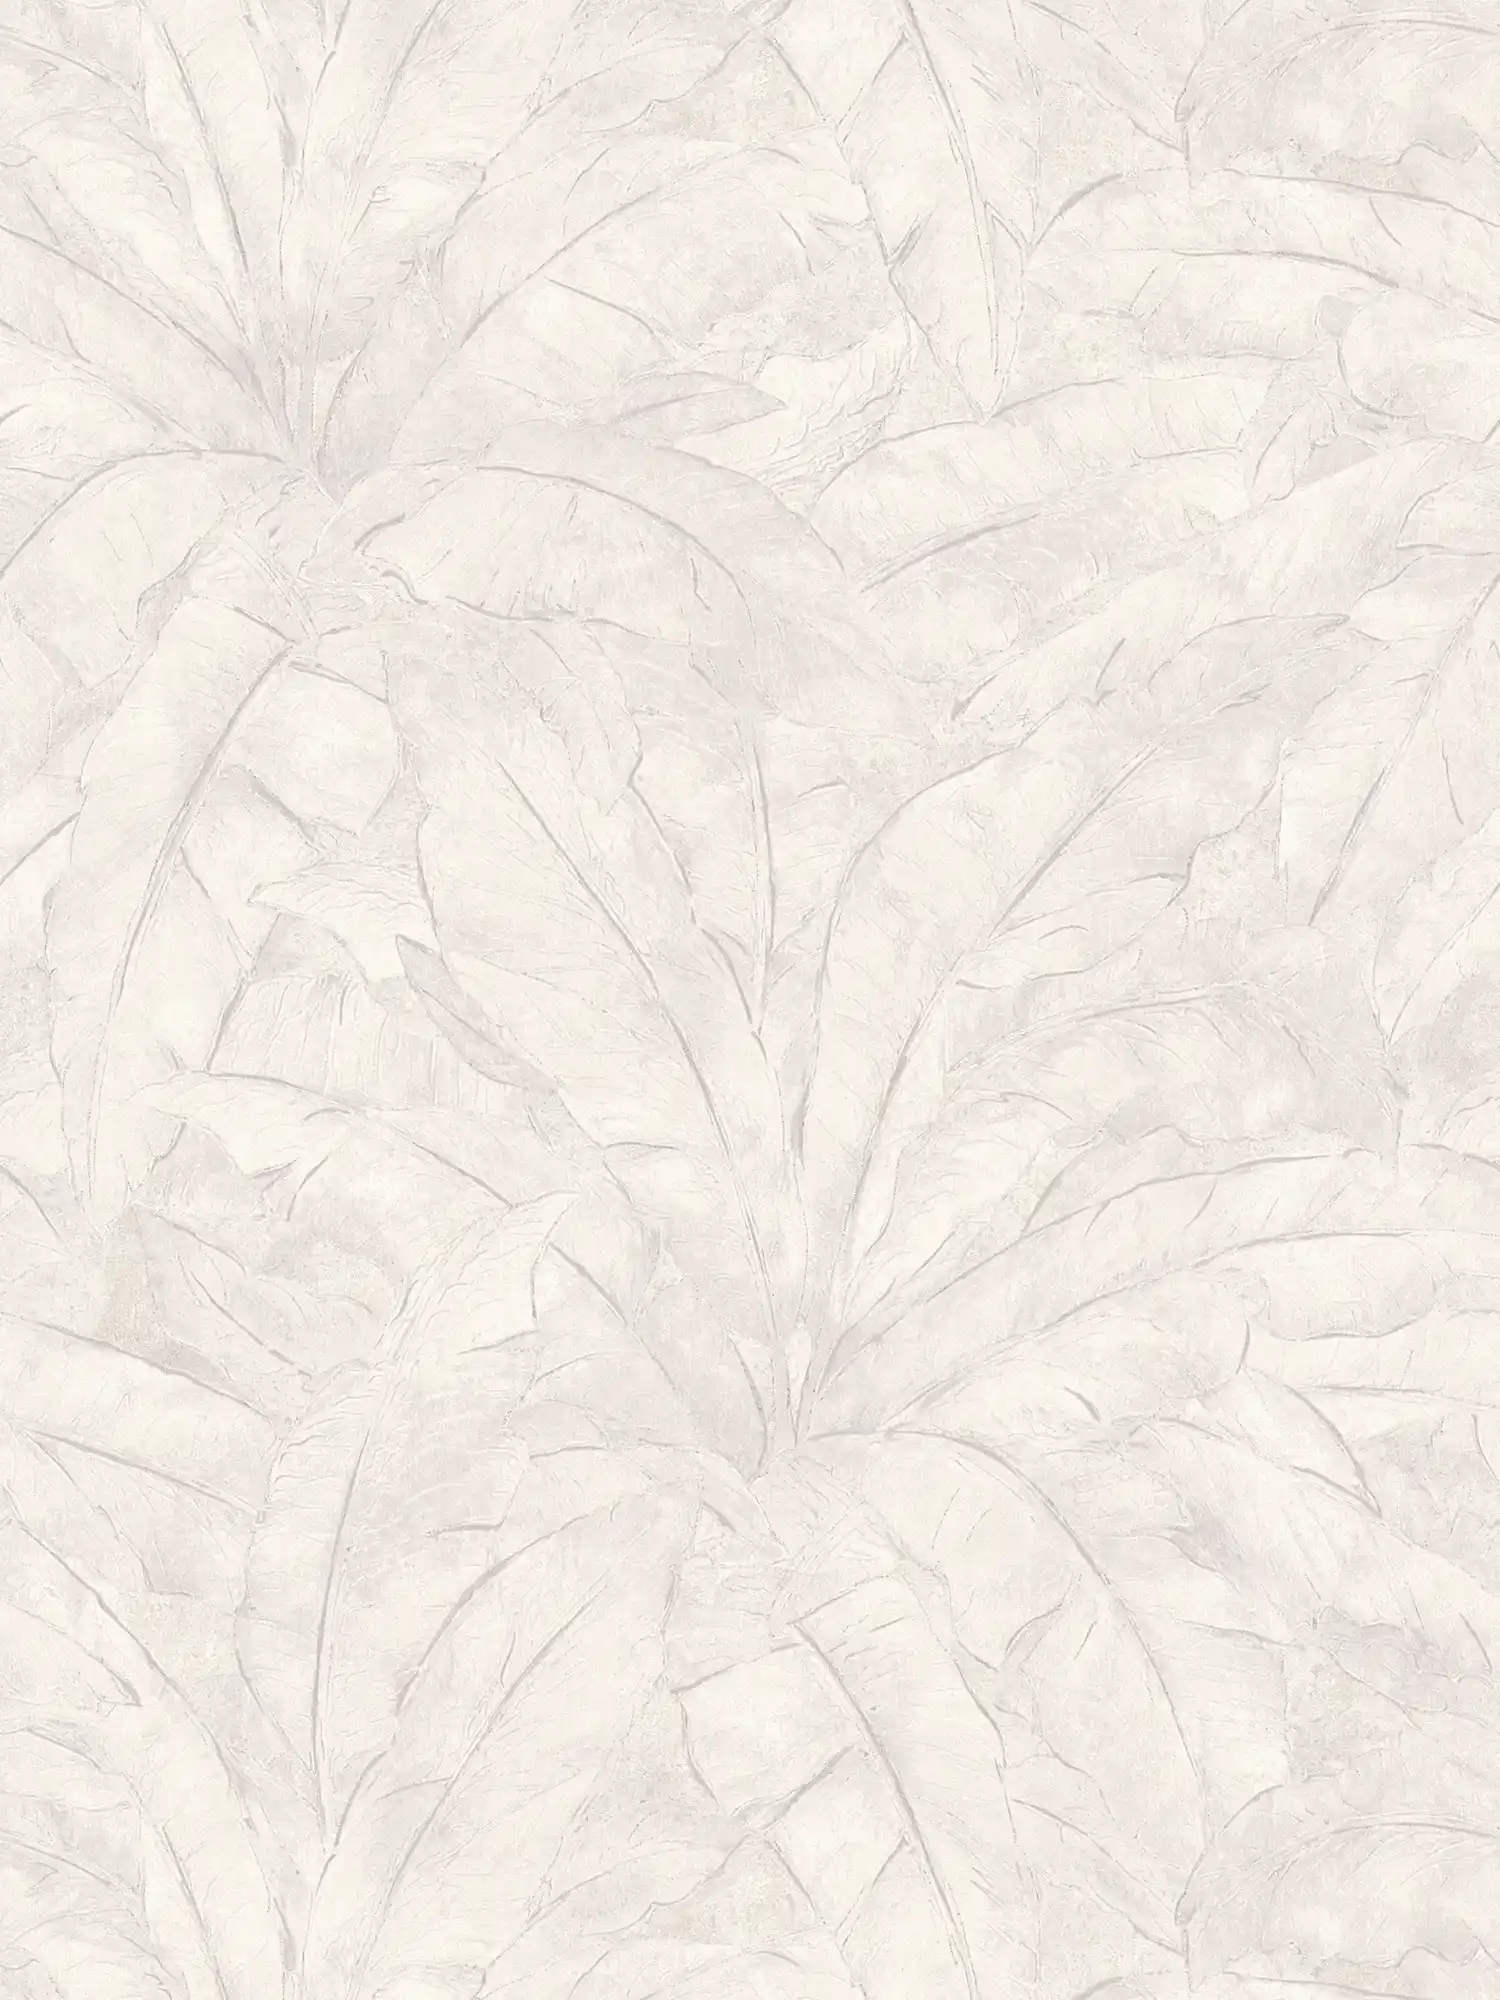         Dschungel Tapete mit Silber Akzent – Grau, Silber, Weiß
    